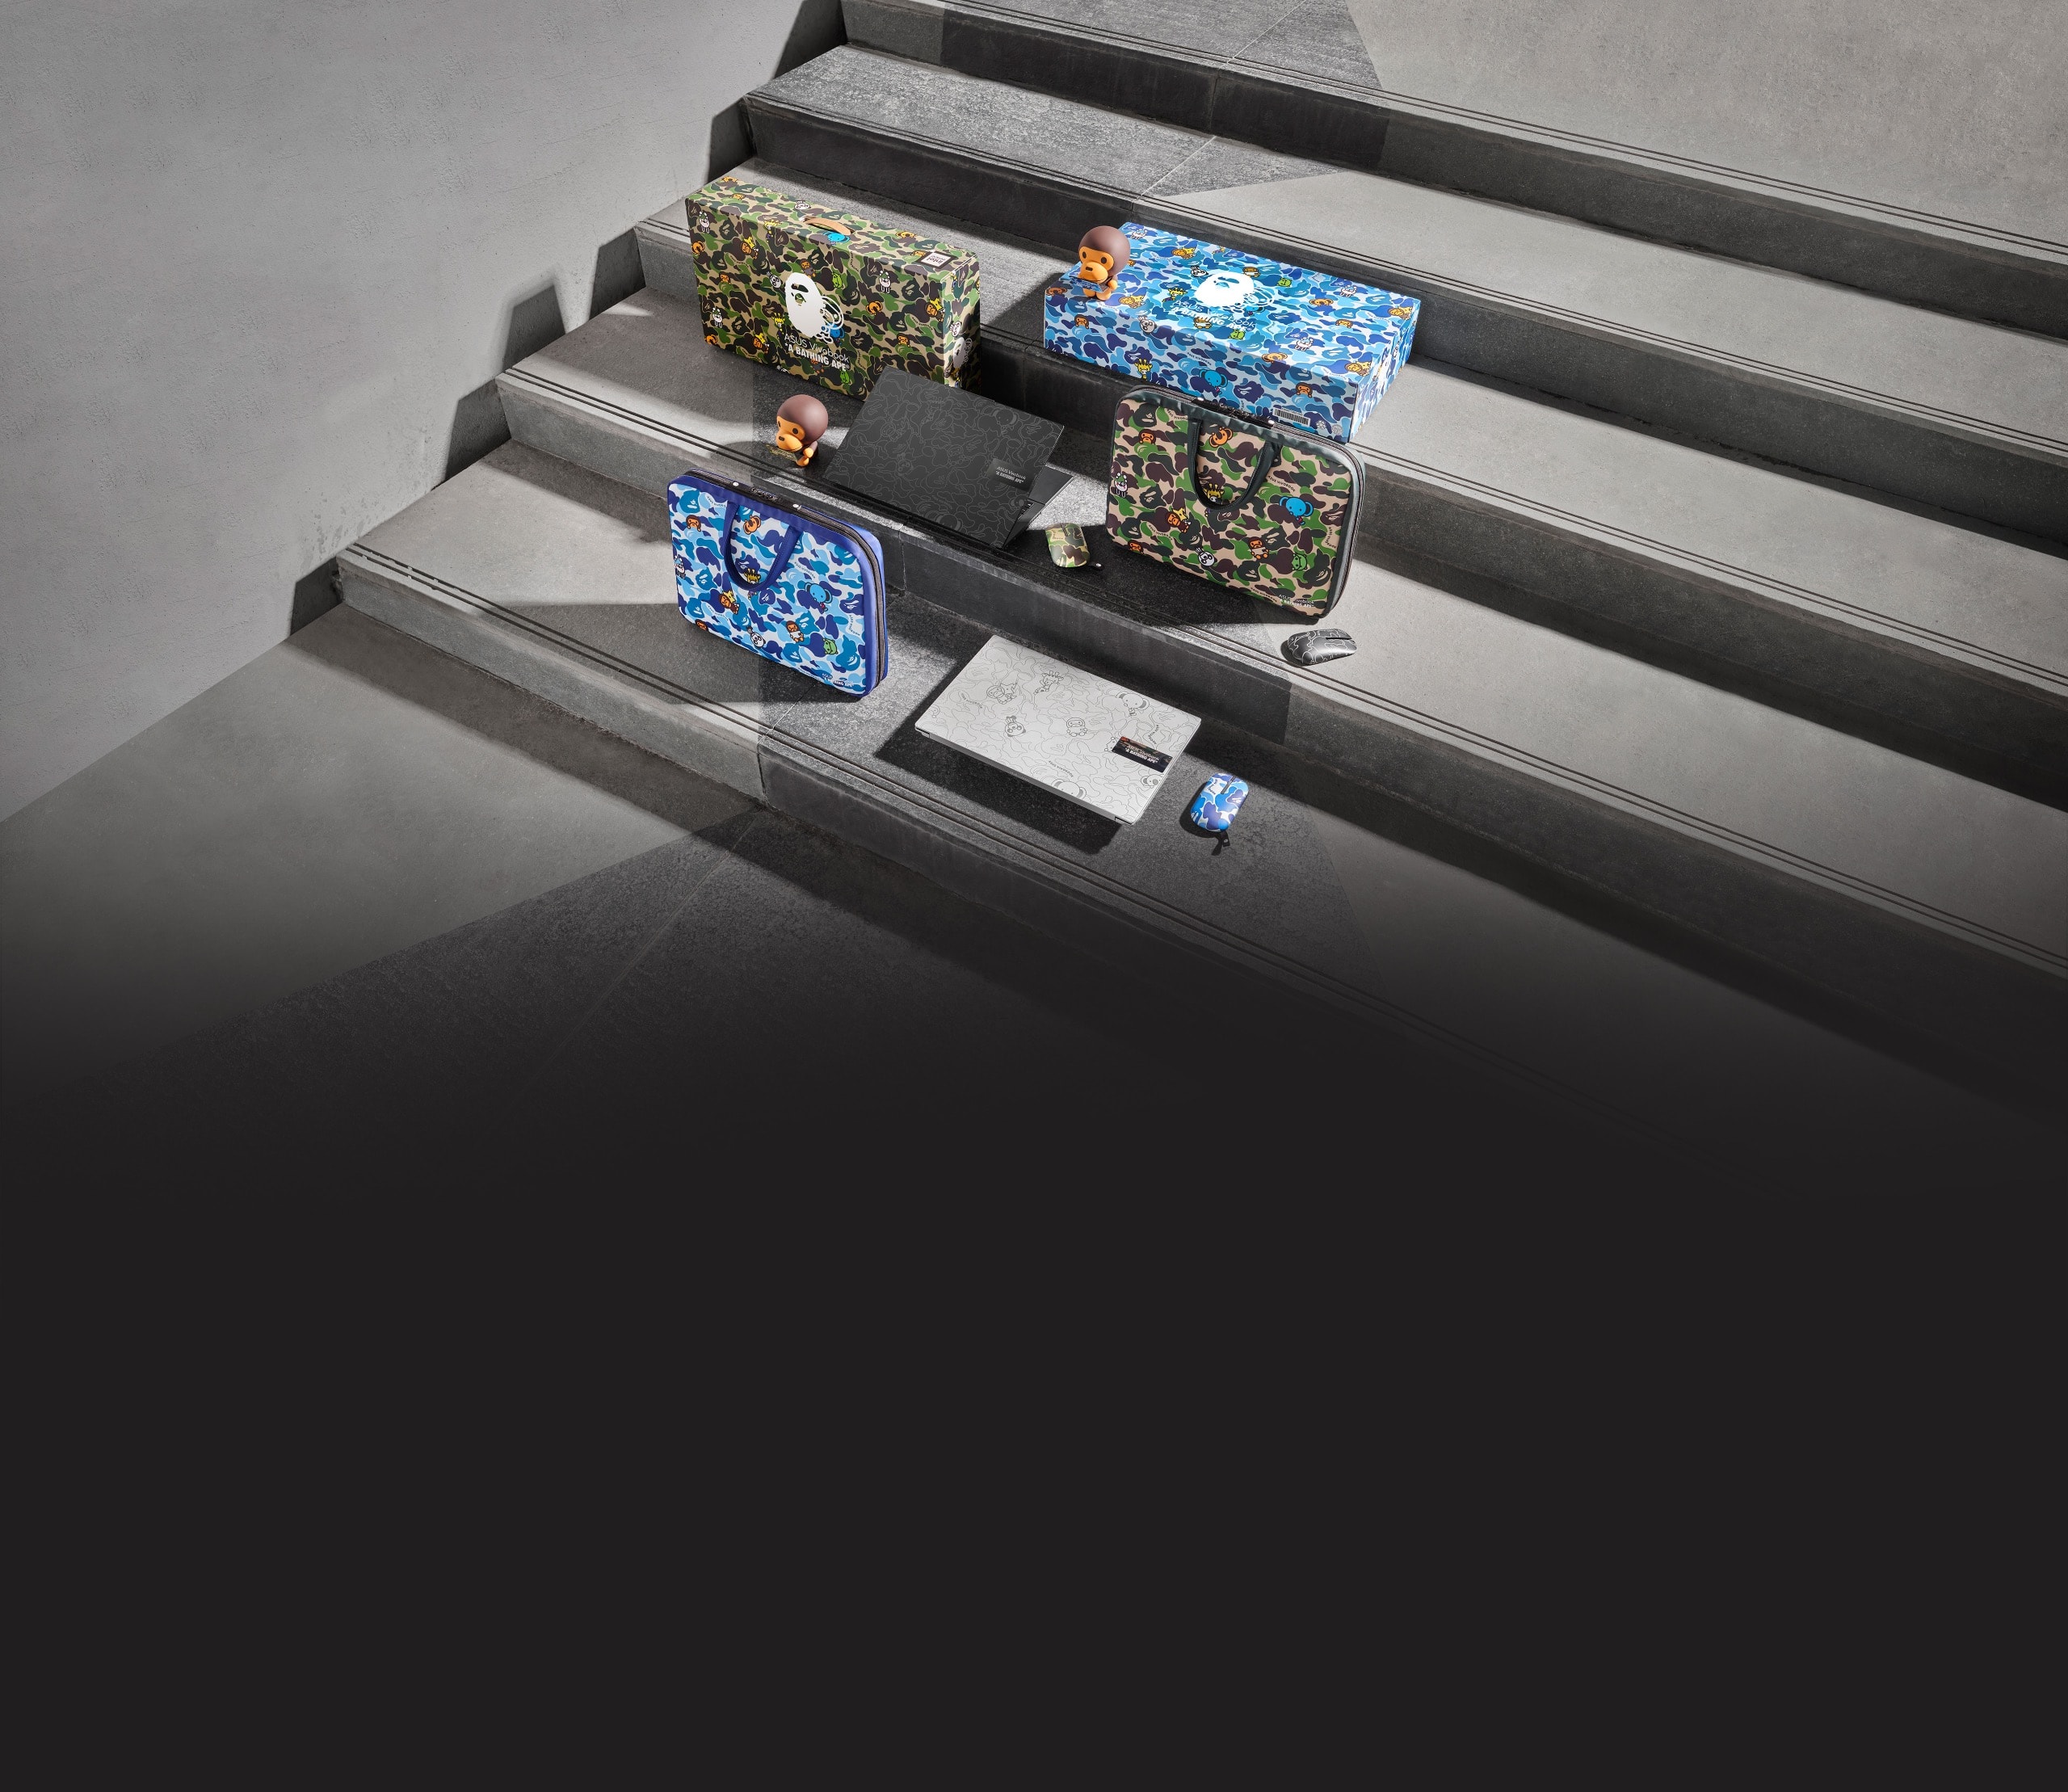 Les Vivobook BAPE Edition bleus et verts sont présentés sur des marches grises et comprennent des coffrets cadeaux, des ordinateurs portables, des souris et des sacs de transport.